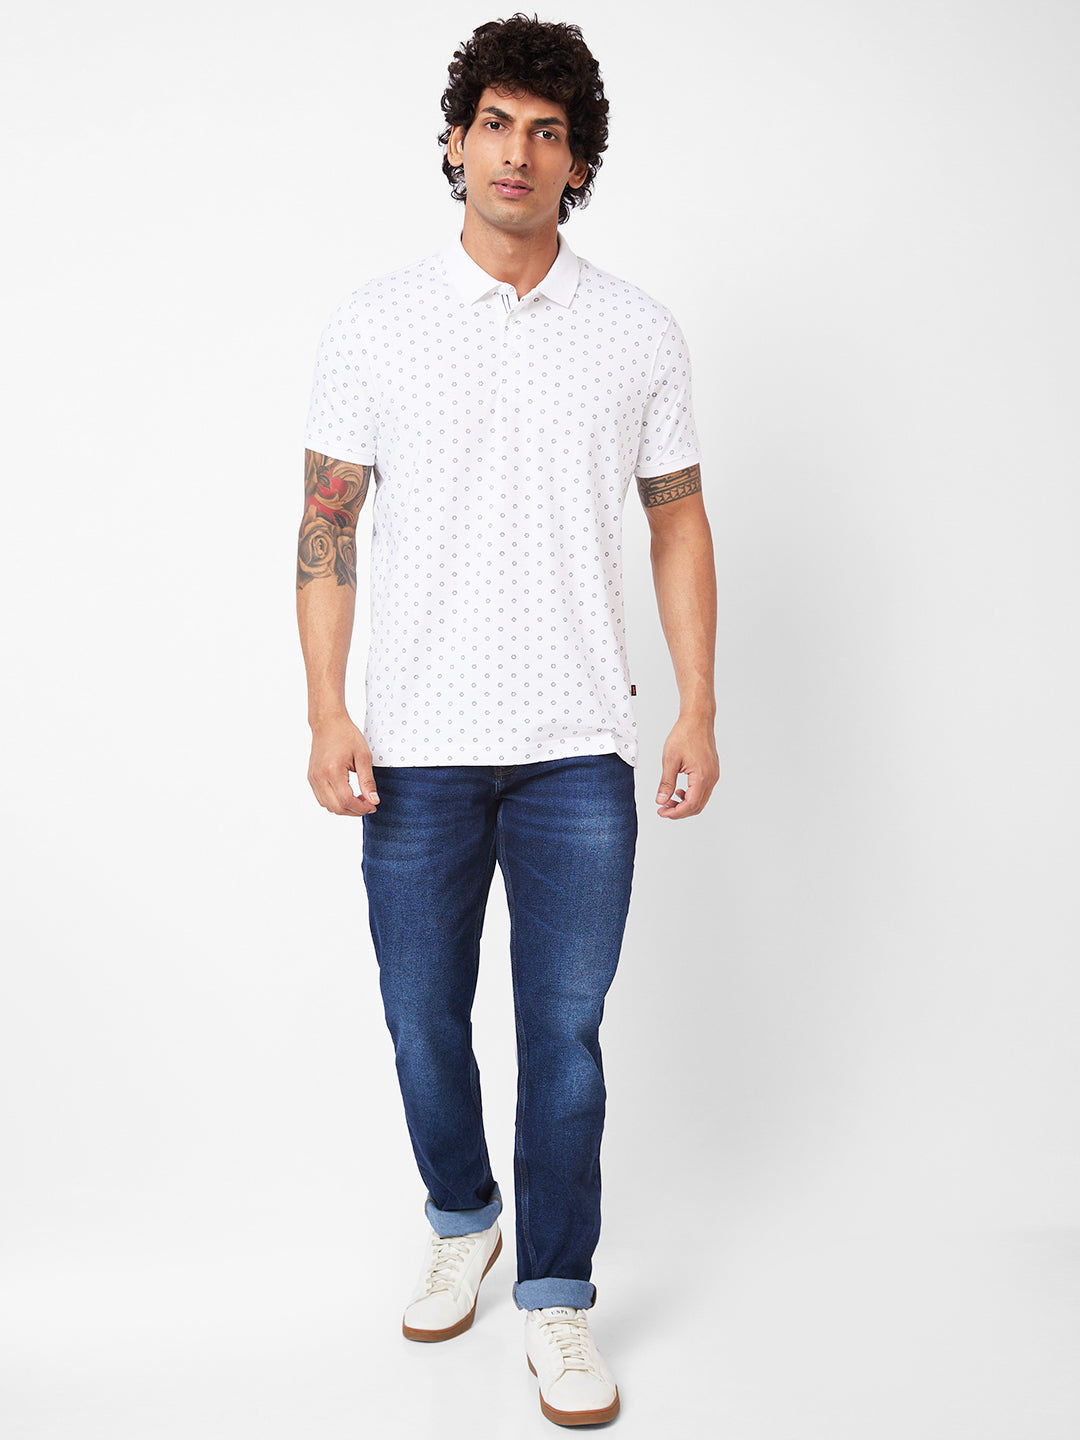 Spykar Polo Collar Half Sleeves White T-Shirt For Men